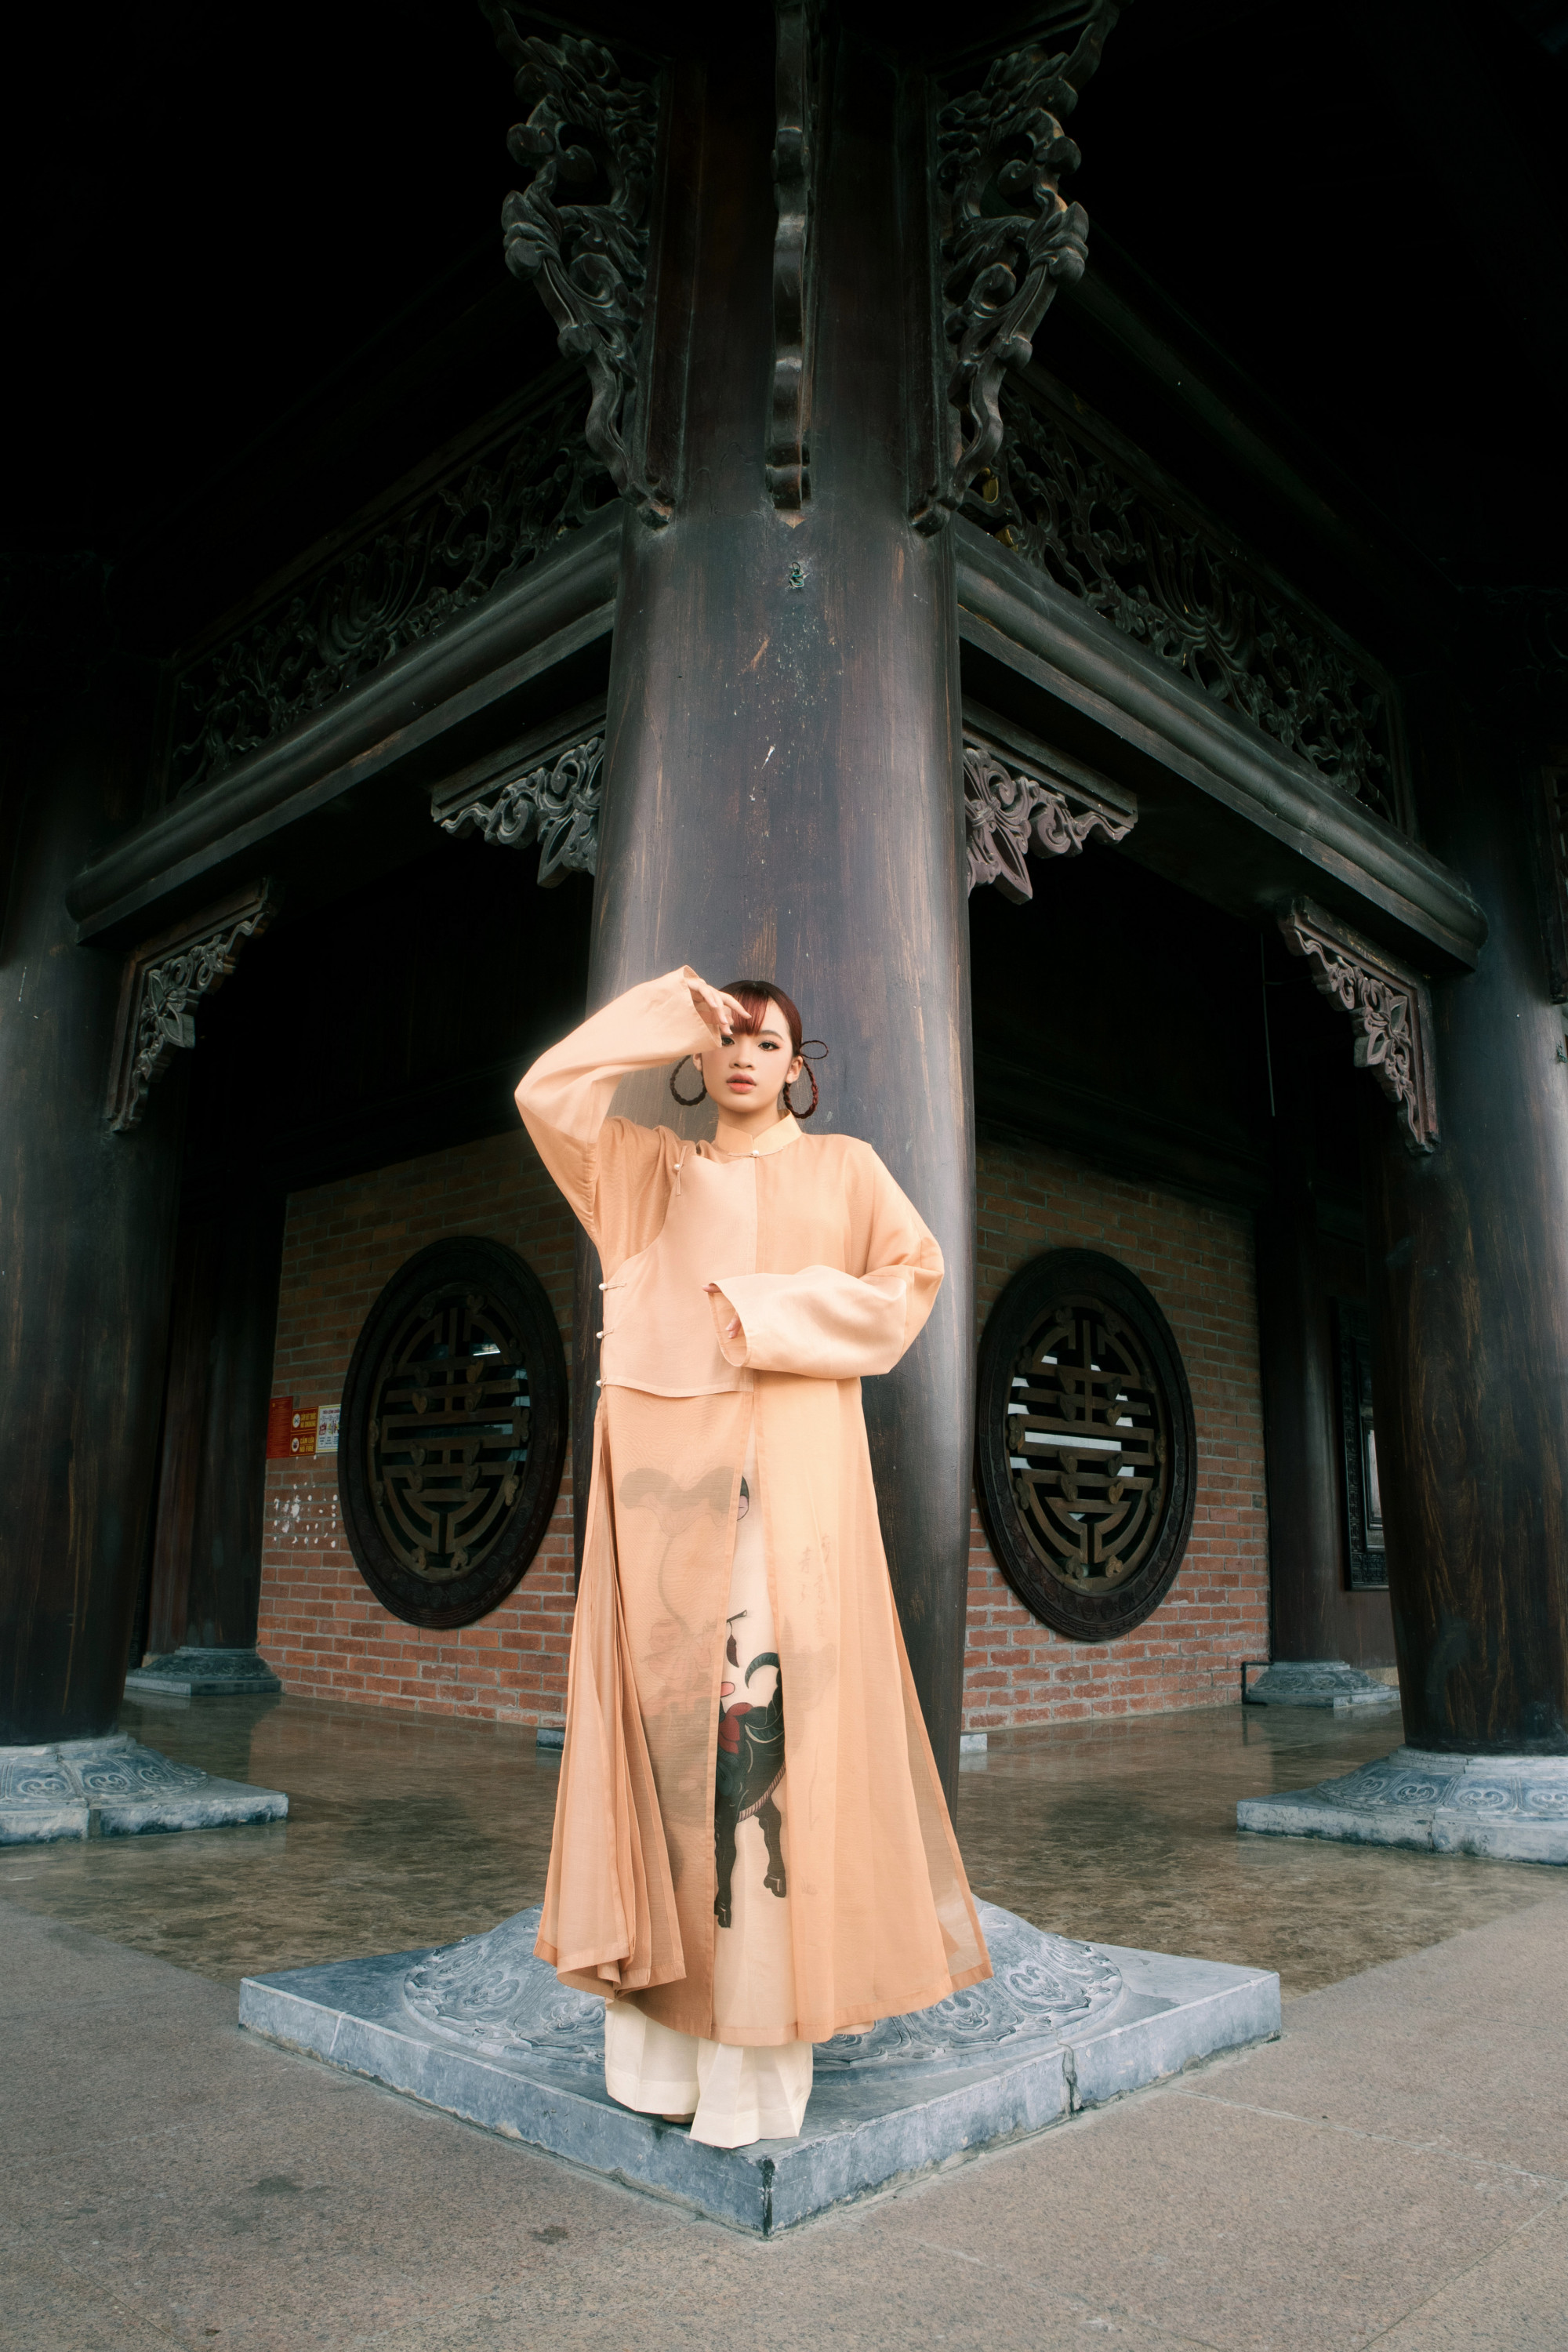 Ở thiết kế cuối cùng, Bảo Hà lựa chọn trang phục áo dài truyền thống với tone màu nâu cam, đây cũng là thiết kế đặc trưng của BST “Nét dân gian” với những họa tiết tôn vinh dòng tranh dân gian Đông Hồ của NTK Nguyễn Minh Công.